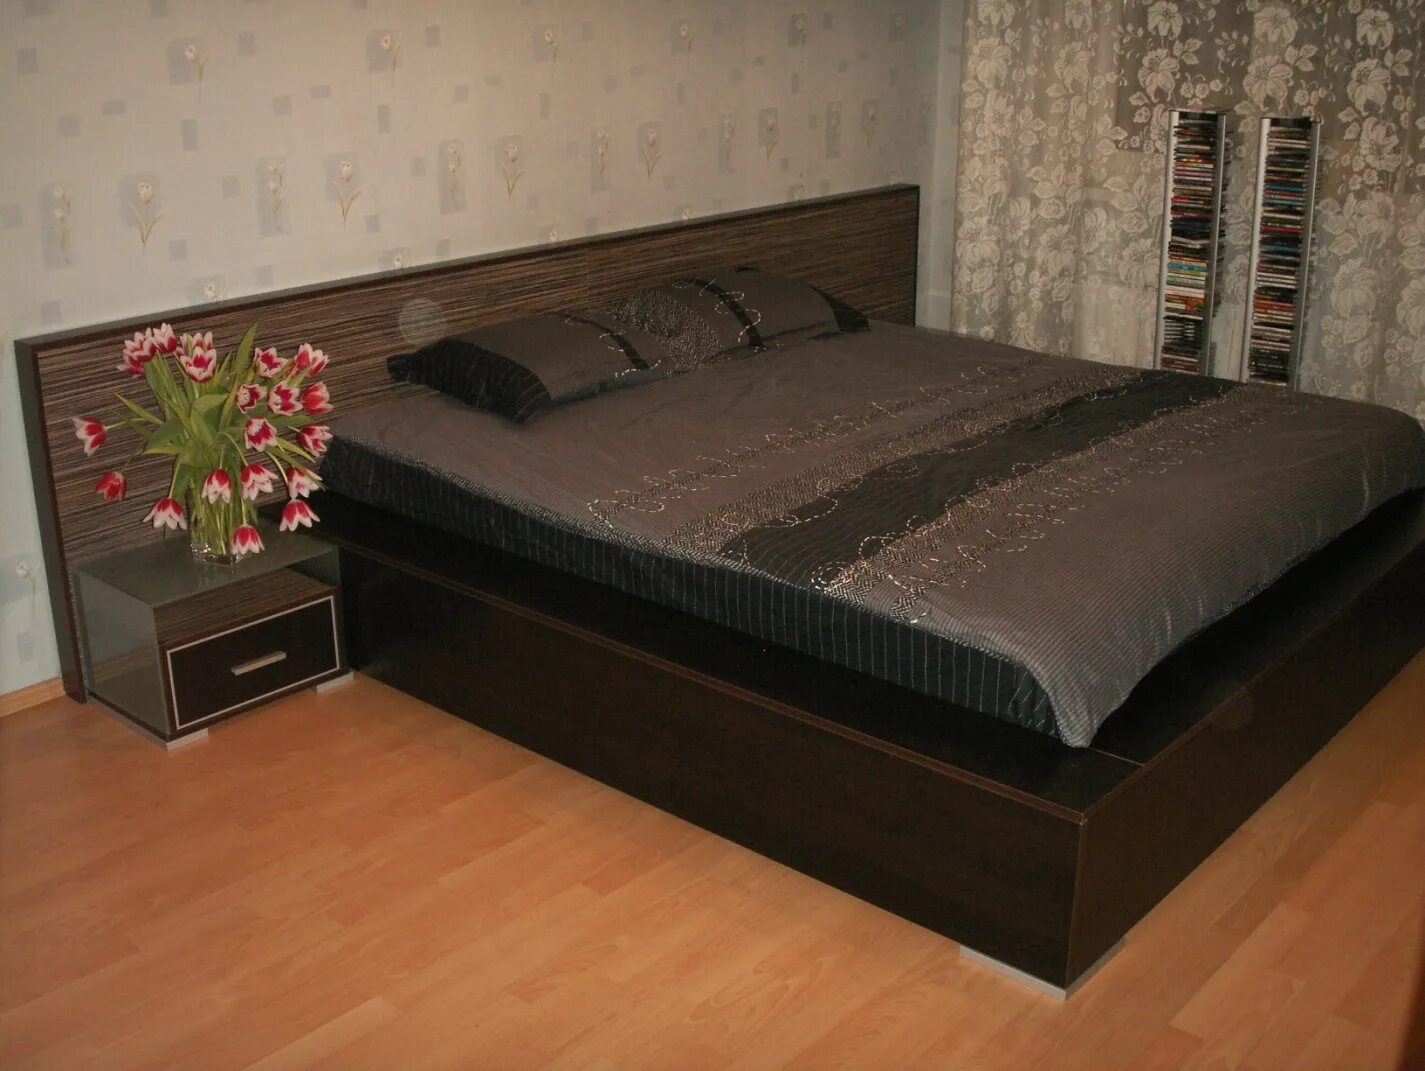 Двуспальная кровать дома дом. Кровать с тумбочками. Кровать со встроенными тумбочками. Кровать двуспальная с тумбами. Кровать двуспальная с прикроватными тумбочками.